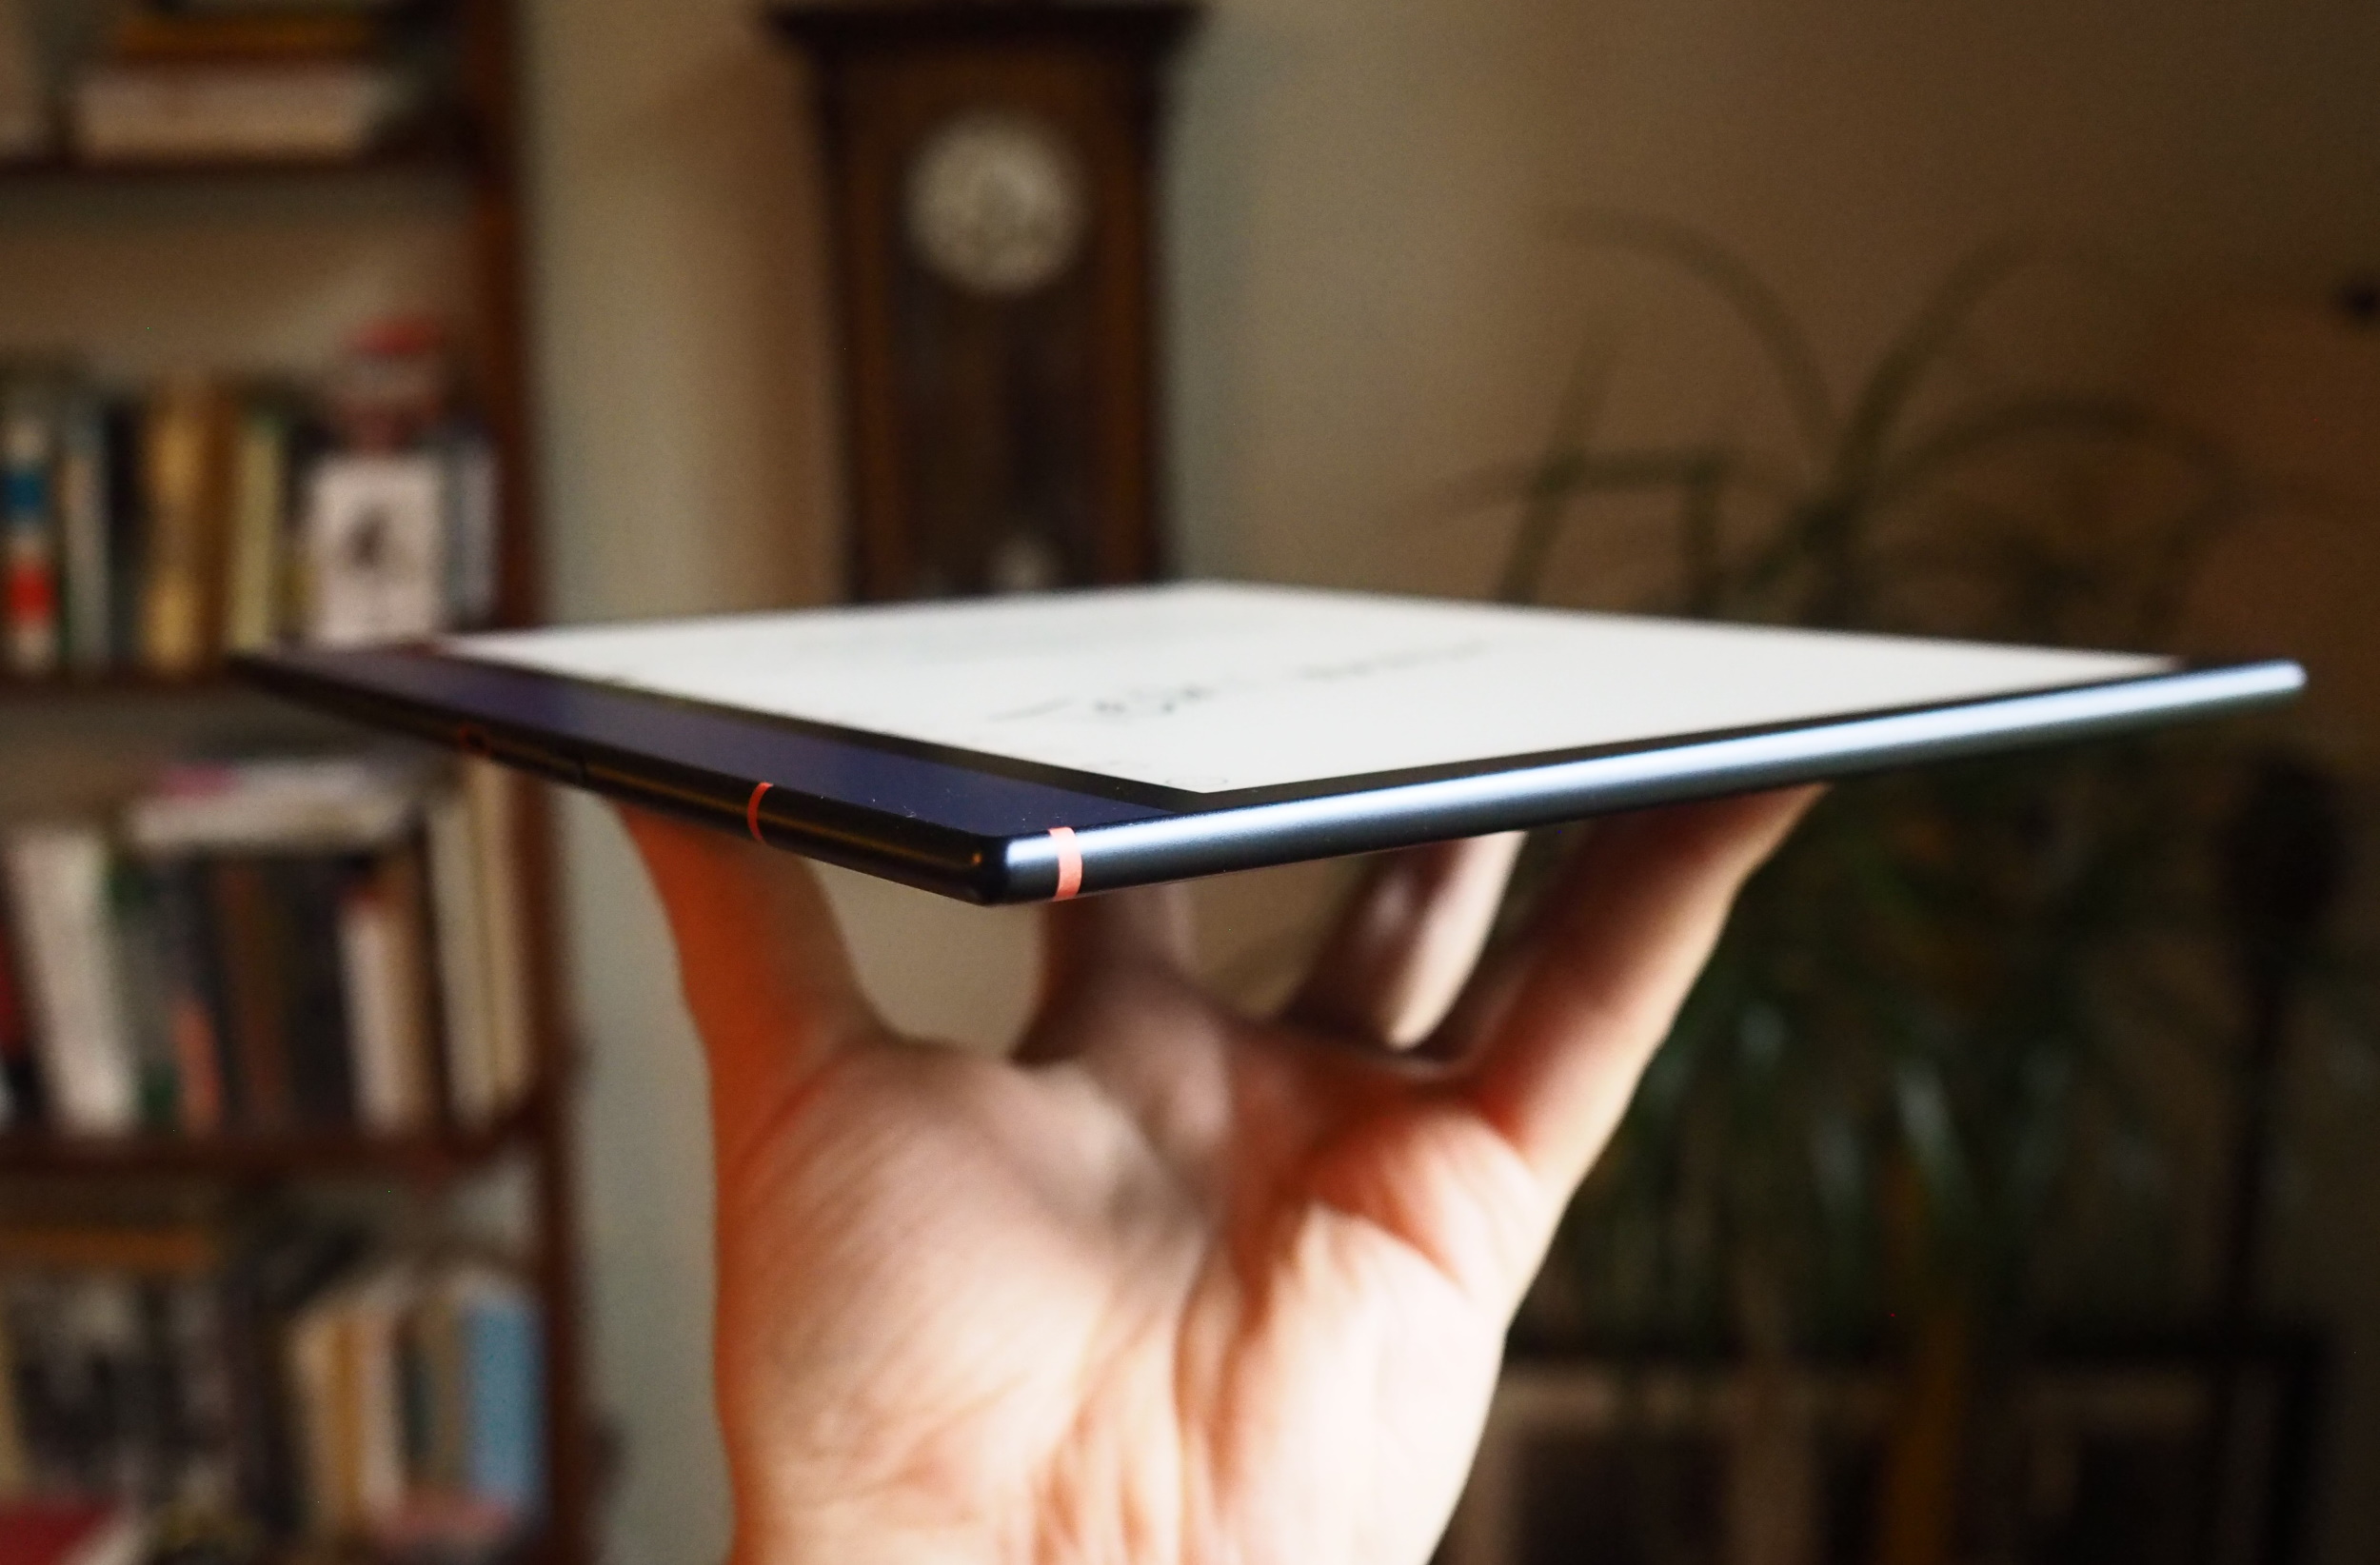 Vista laterale del tablet che mostra la sua forma sottile e metallica.